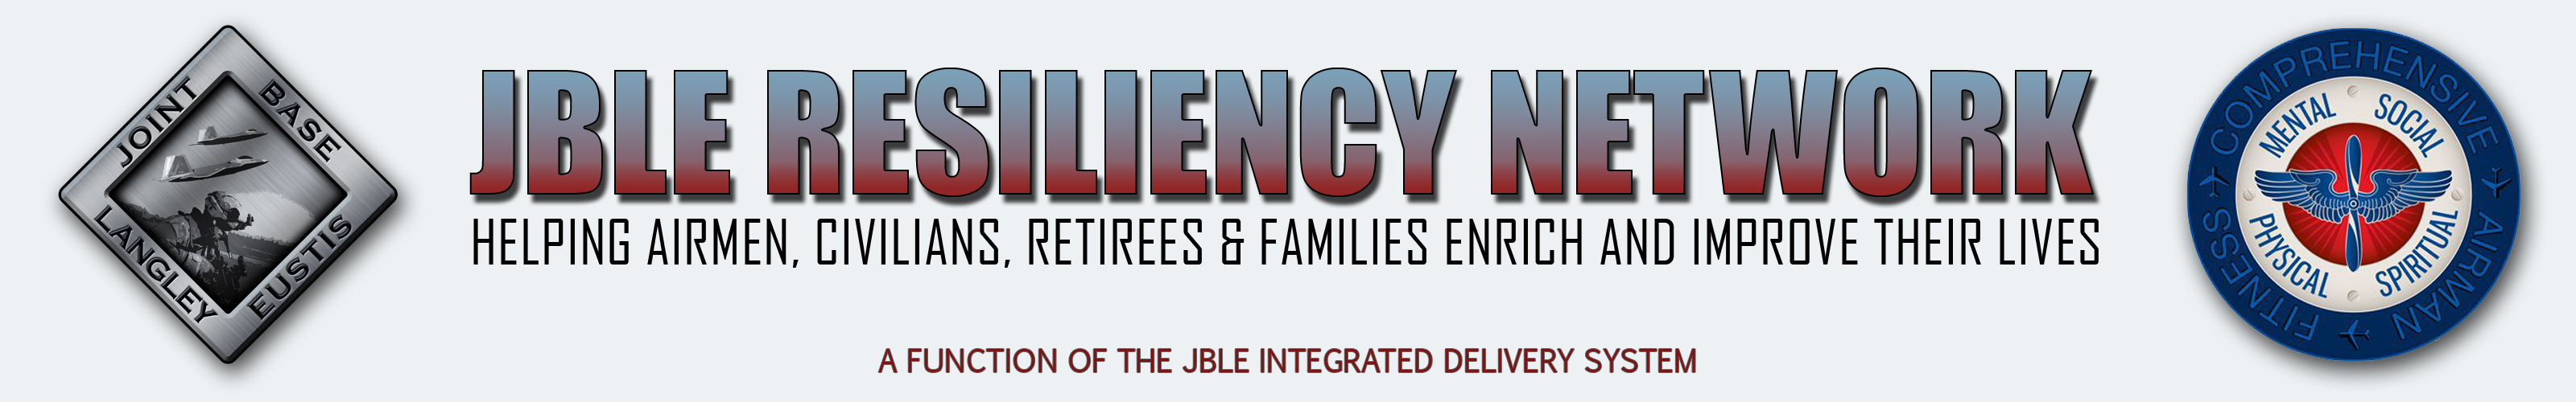 JBLE Resiliency Network